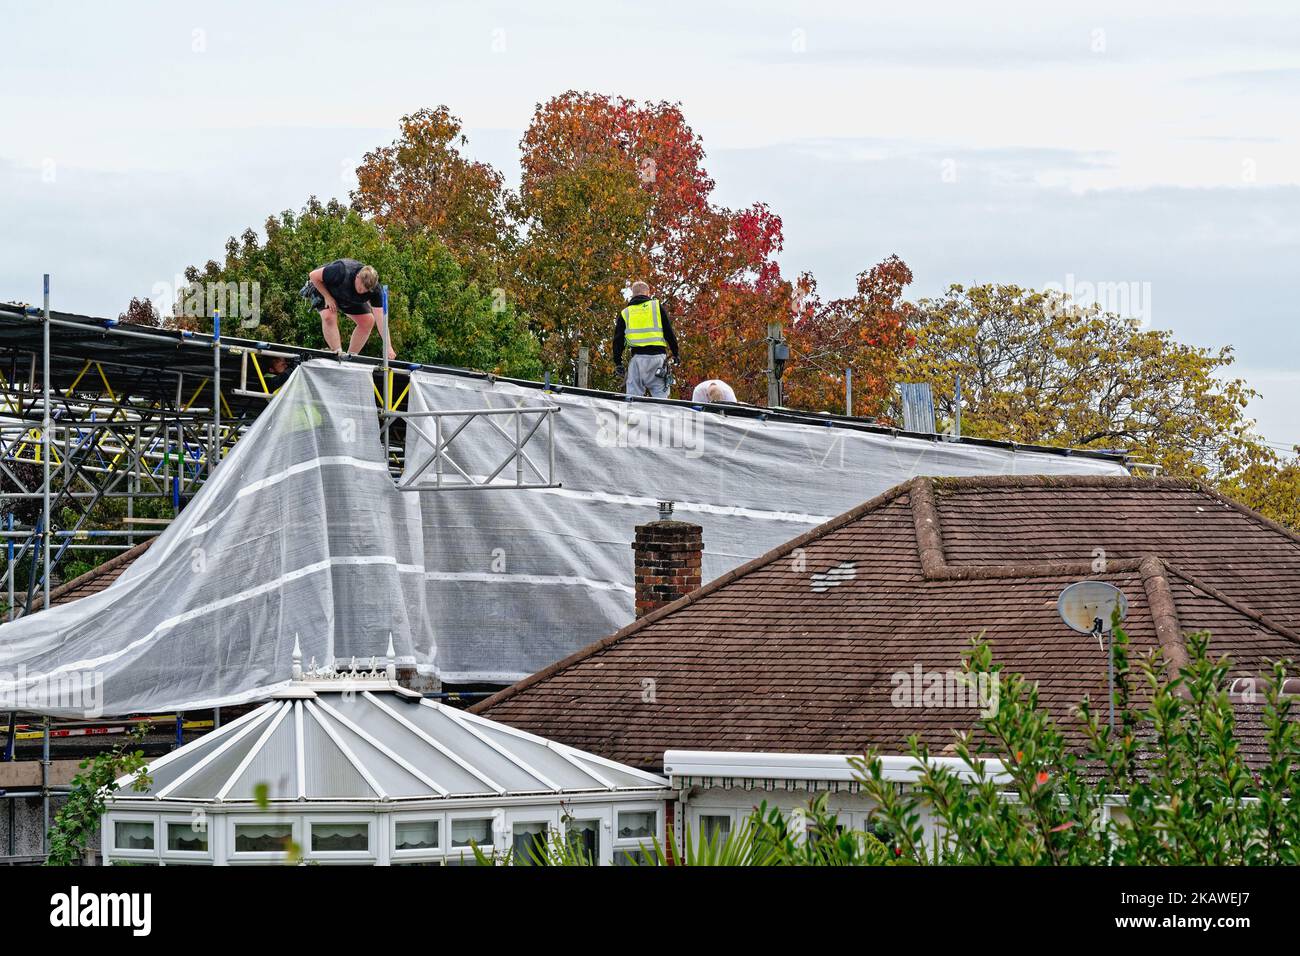 Échafaudages érigeant un échafaudage sur un bungalow de banlieue avant les travaux de construction sur le toit, Shepperton Angleterre Royaume-Uni Banque D'Images